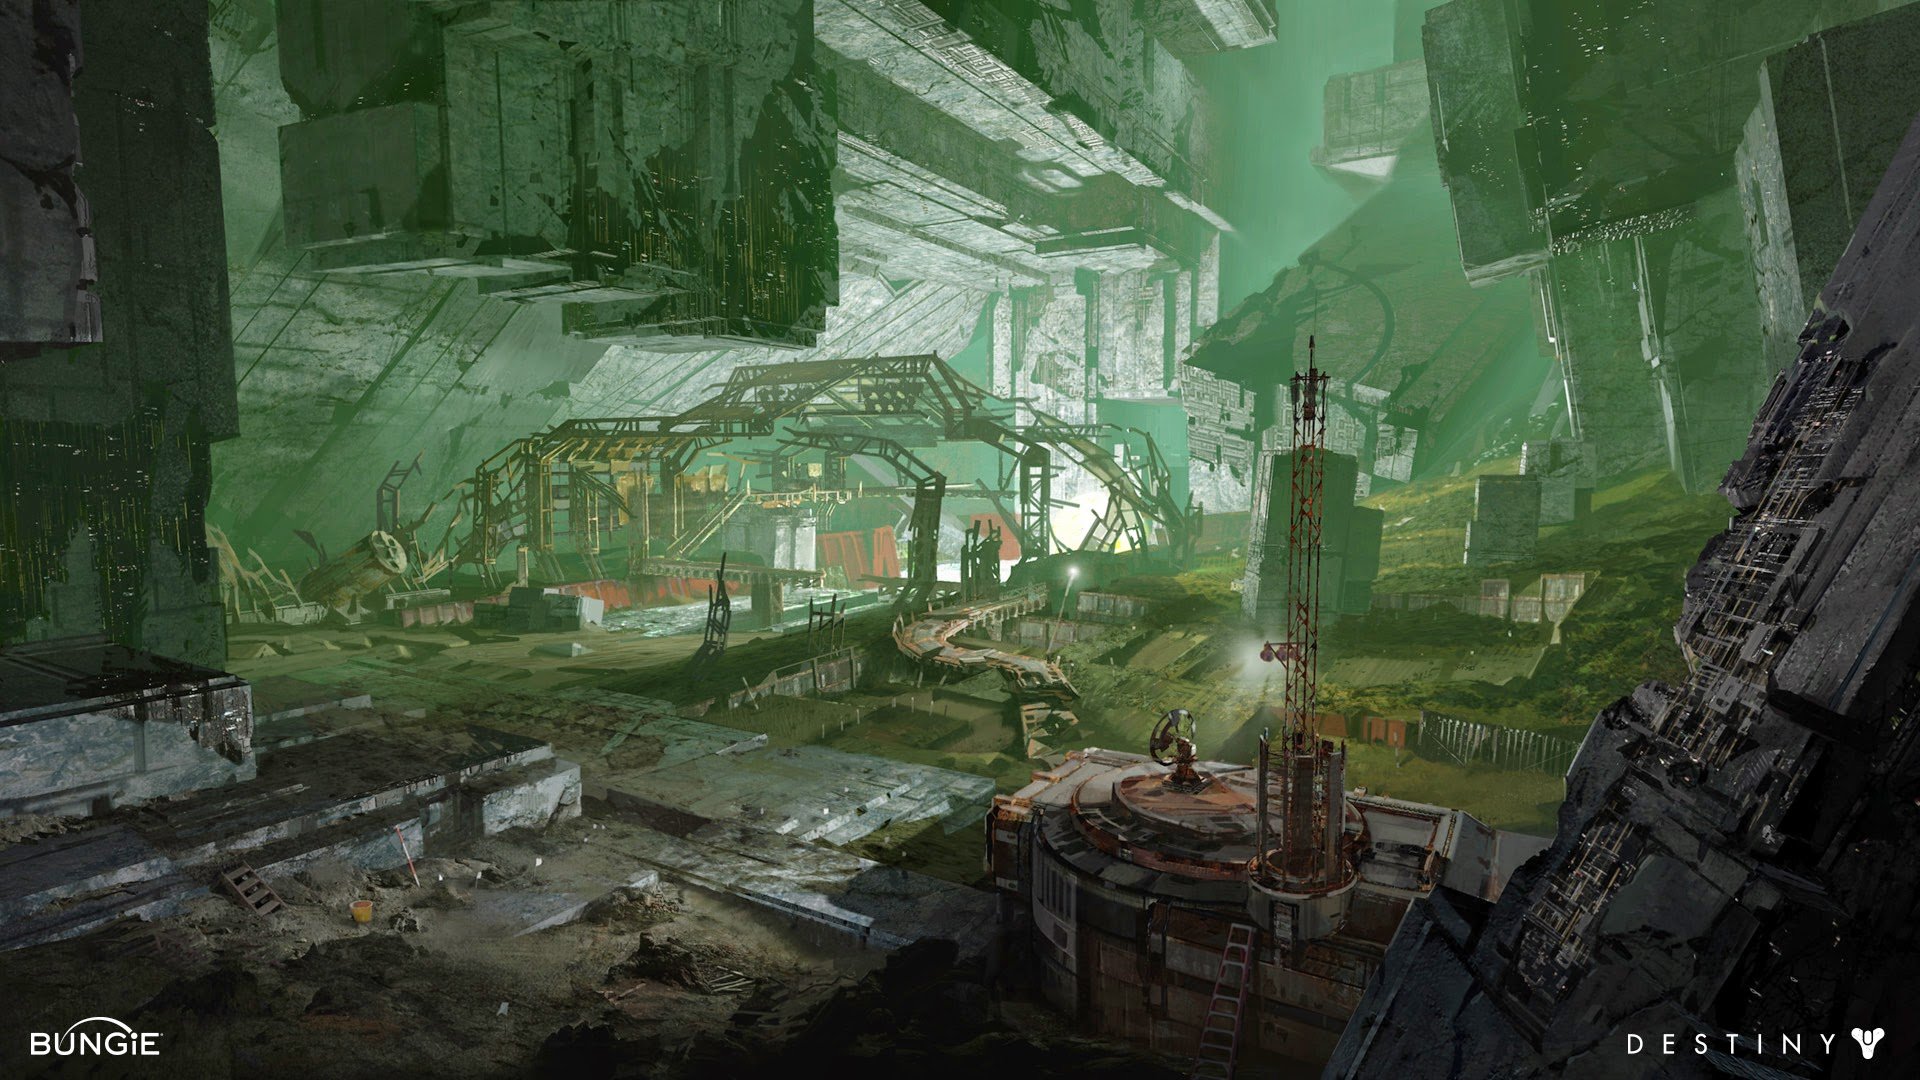 Les concept arts d'environnements du jeu Destiny par Dorje Bellbrook